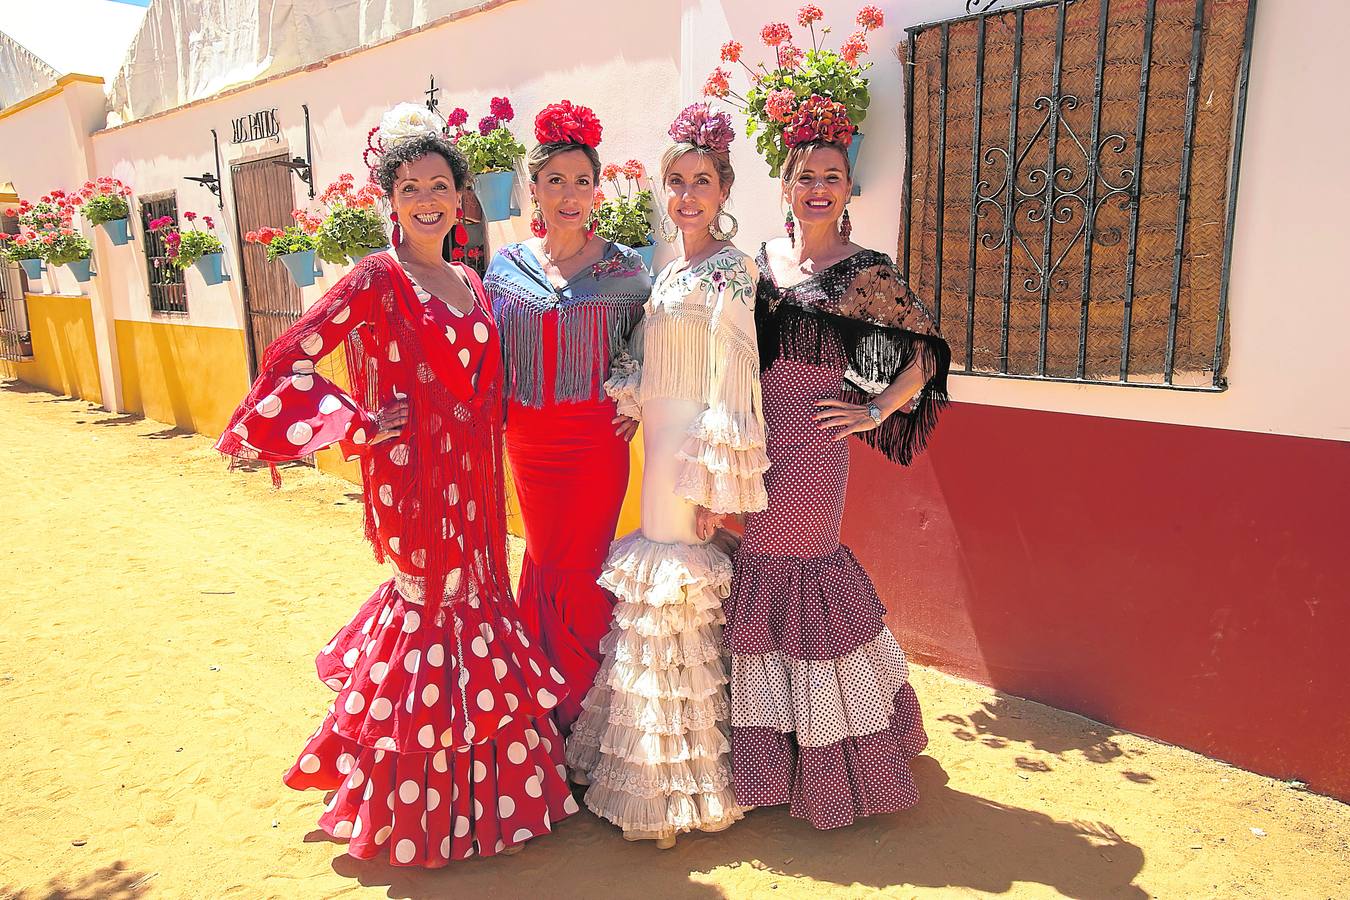 El ambiente del miércoles en las casetas de la Feria de Córdoba, en imágenes